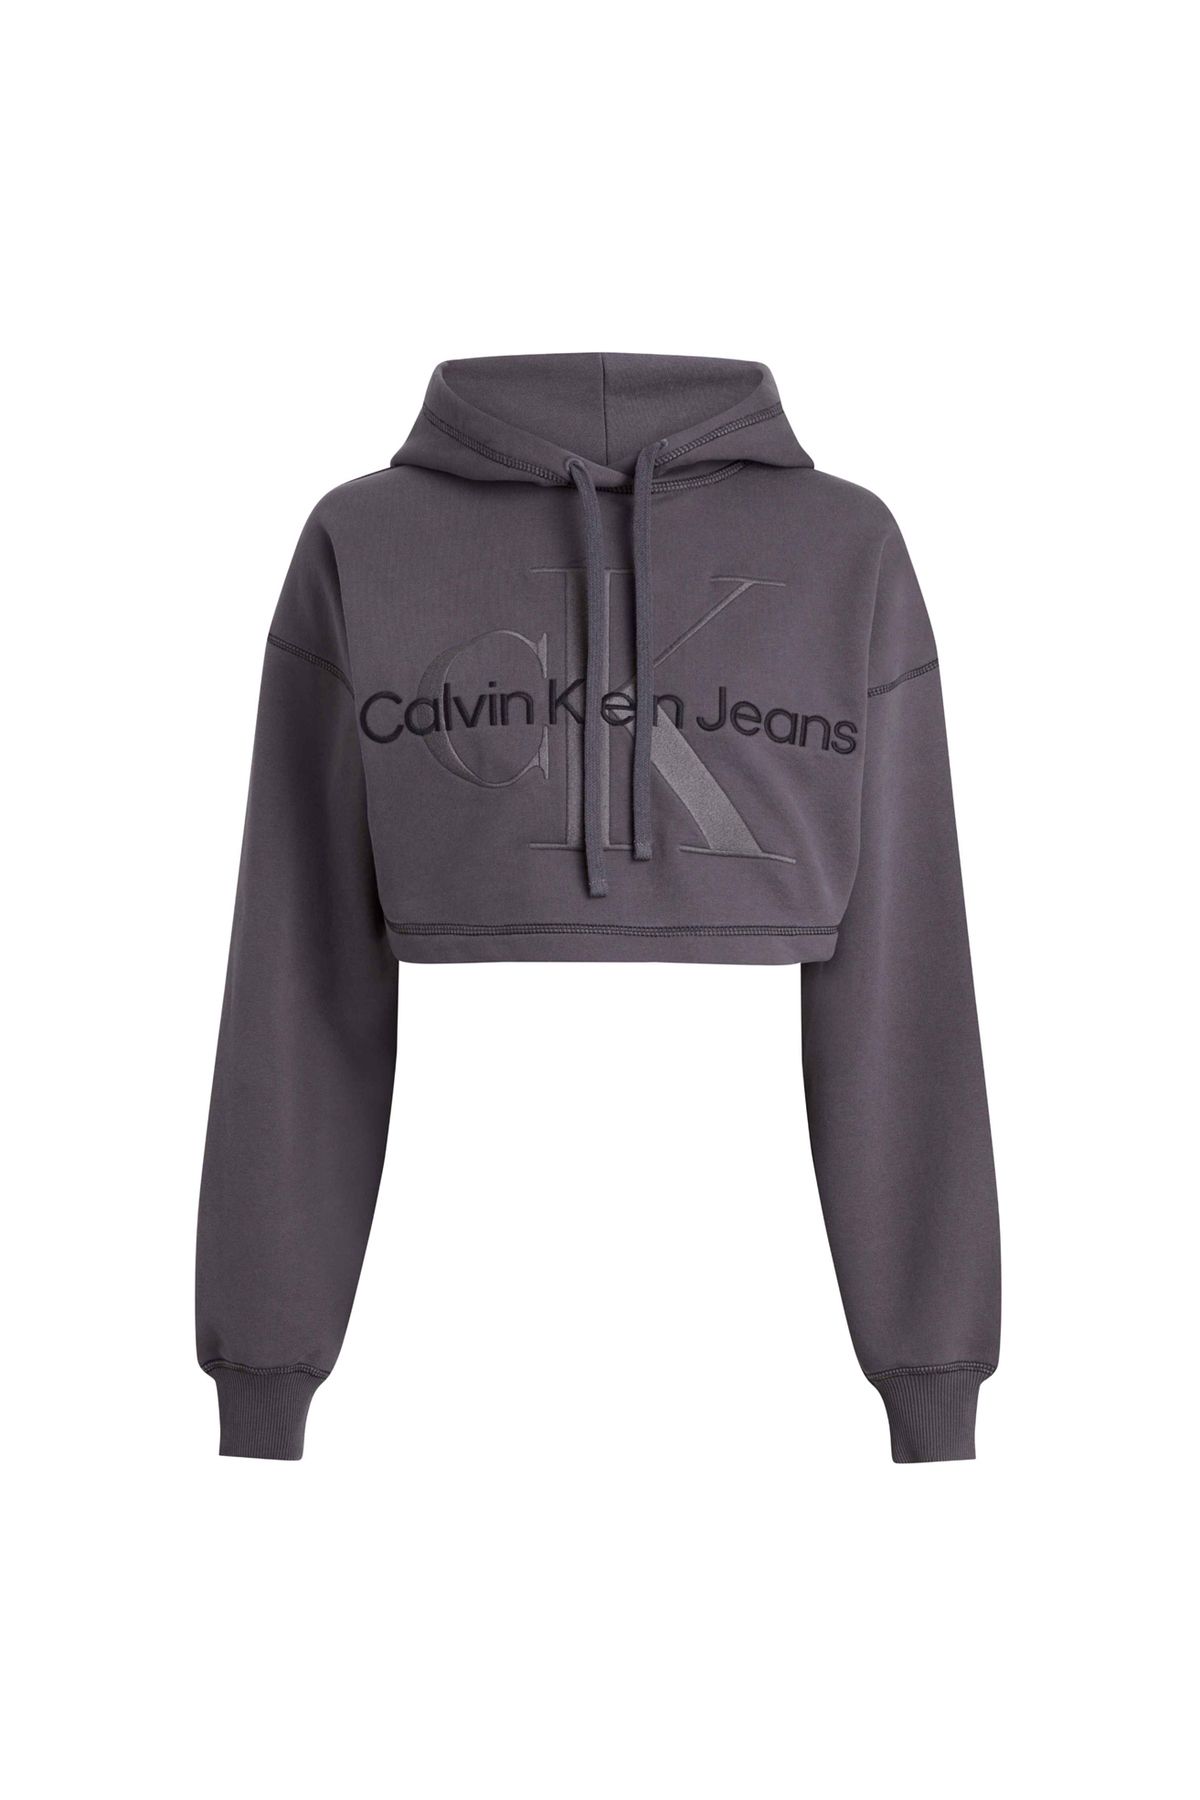 Calvin Klein Jeans Kapüşon Yaka Nakışlı Koyu Gri Kadın Sweatshırt J20j222540pt2